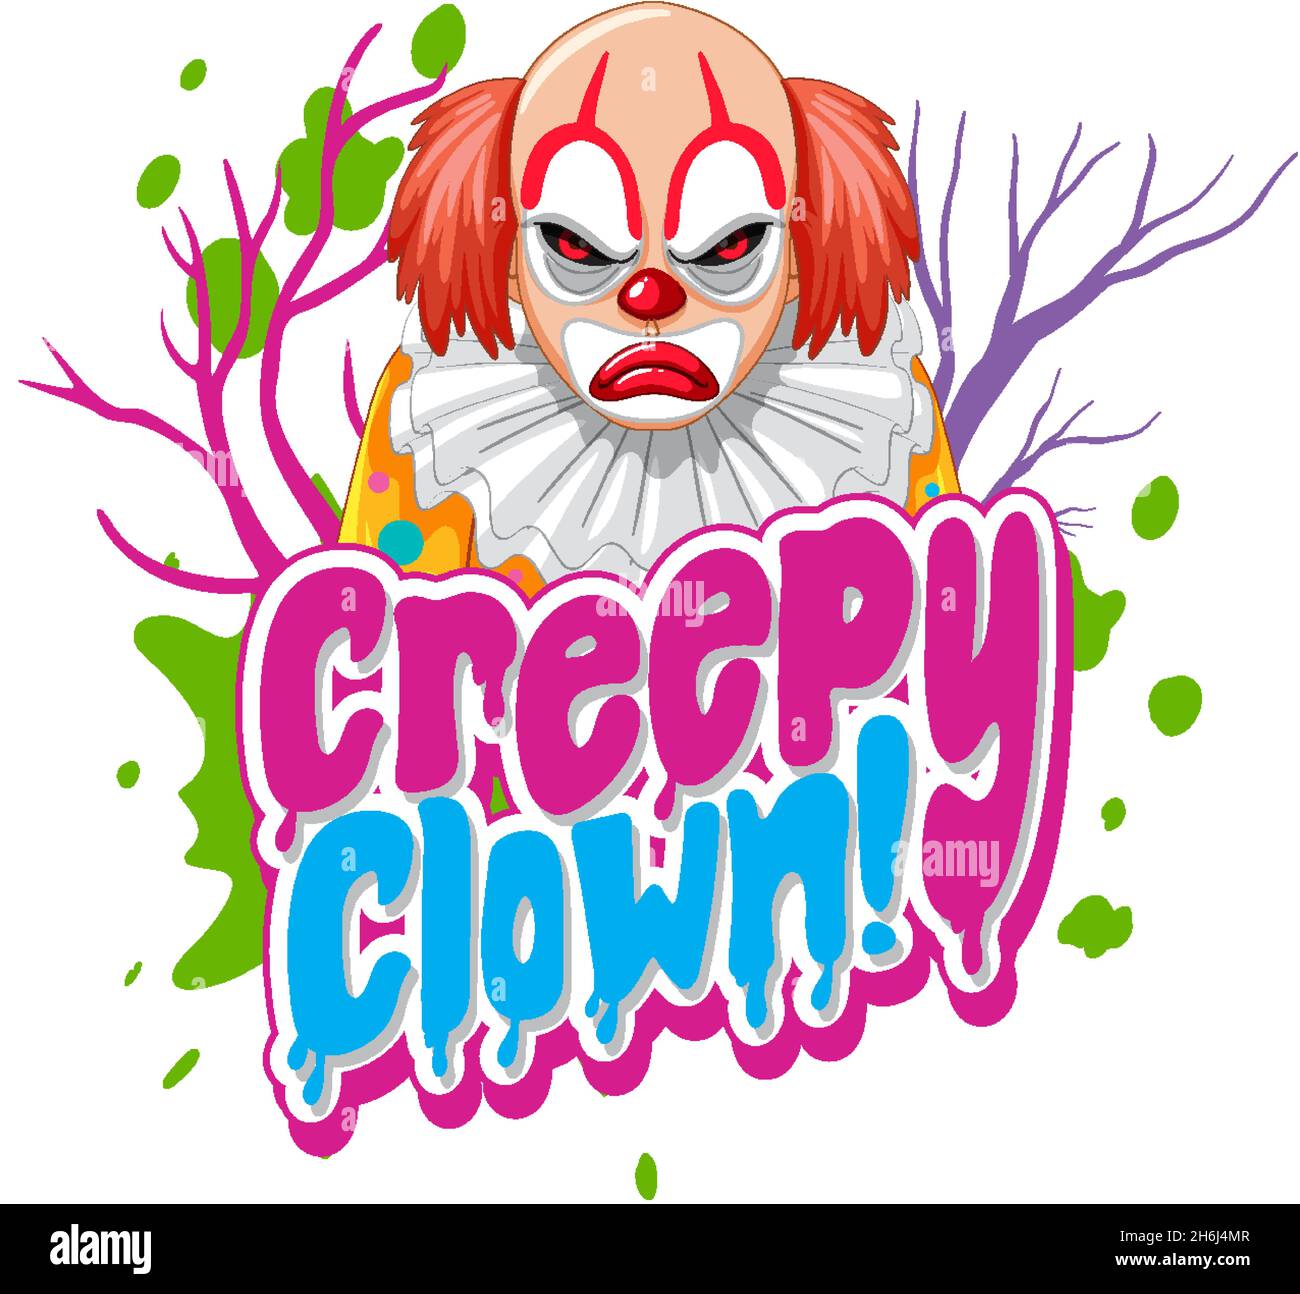 Carattere di clown creepy con illustrazione di clown killer Illustrazione Vettoriale